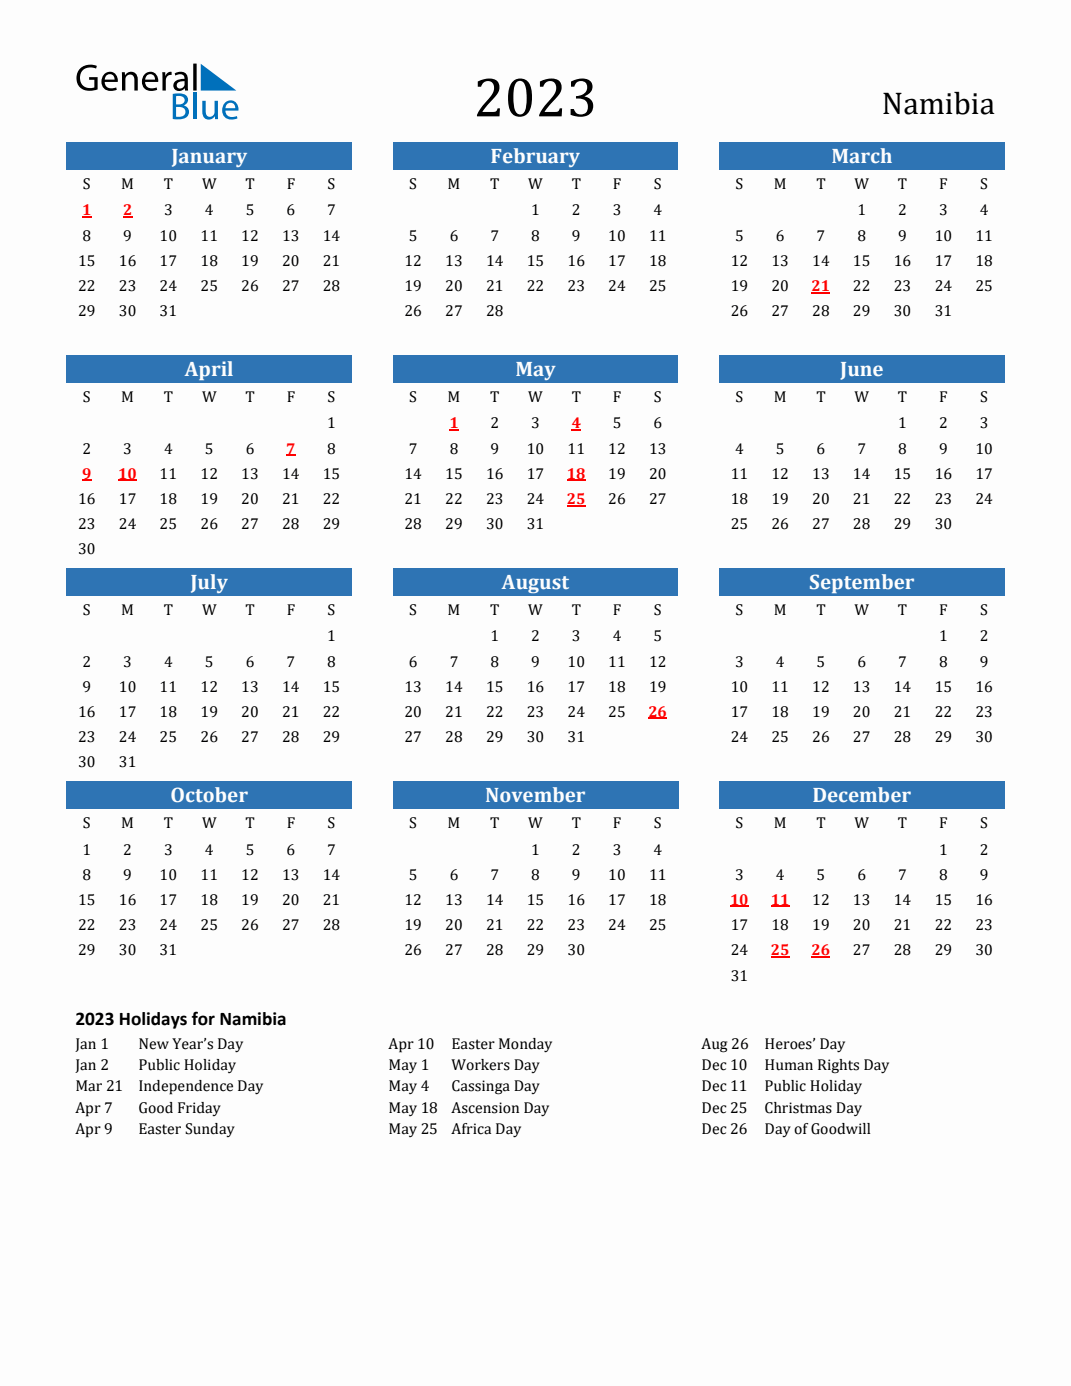 be-na-calendar